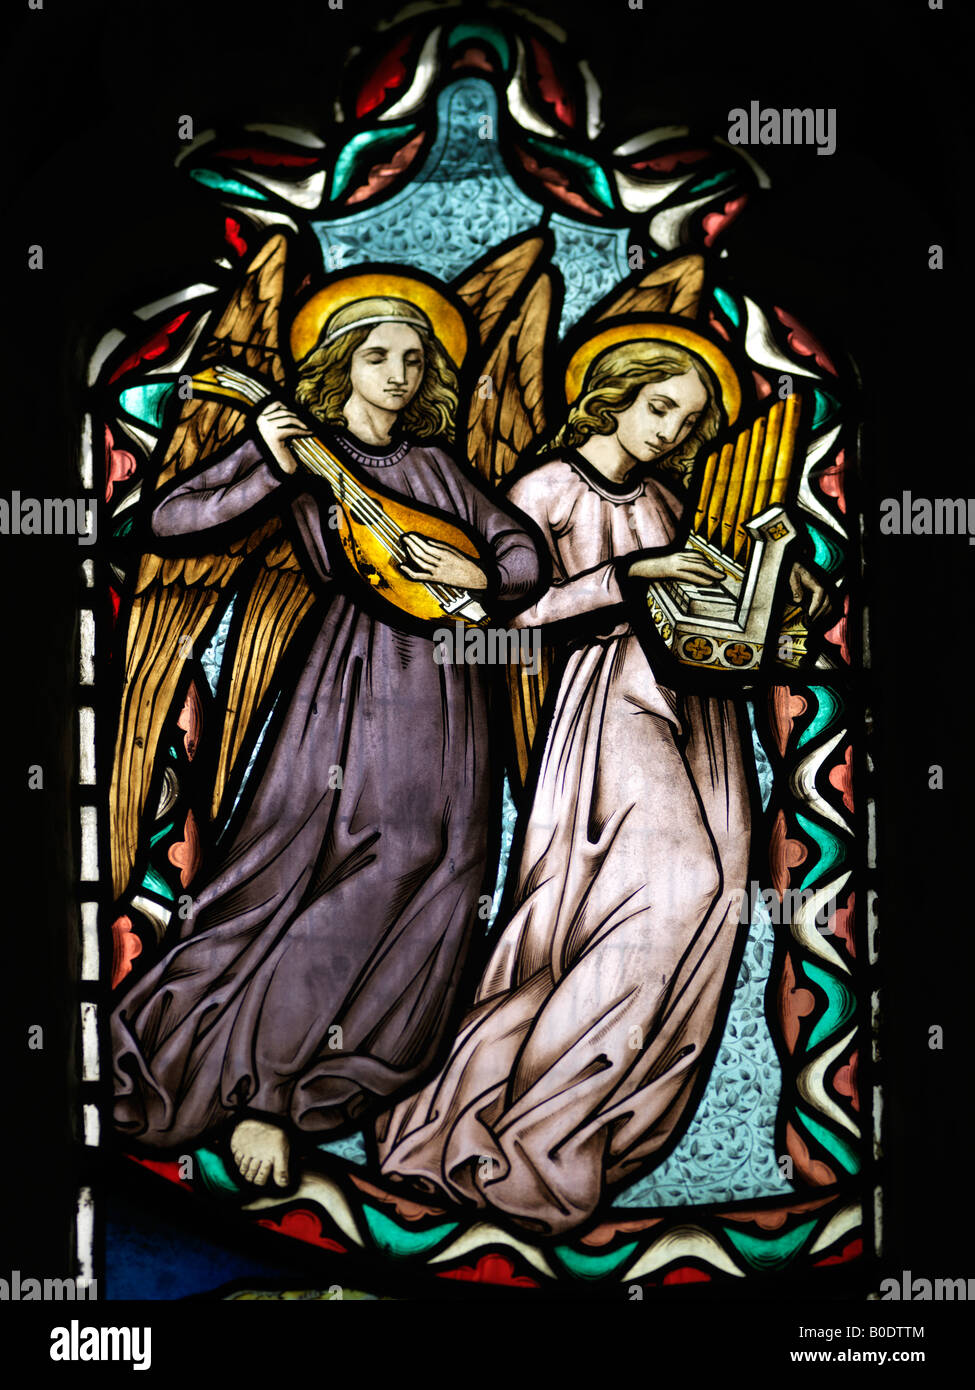 Kirche St. Catherines Merstham Surrey Engel spielen Musikinstrumente in Glasmalerei Stockfoto